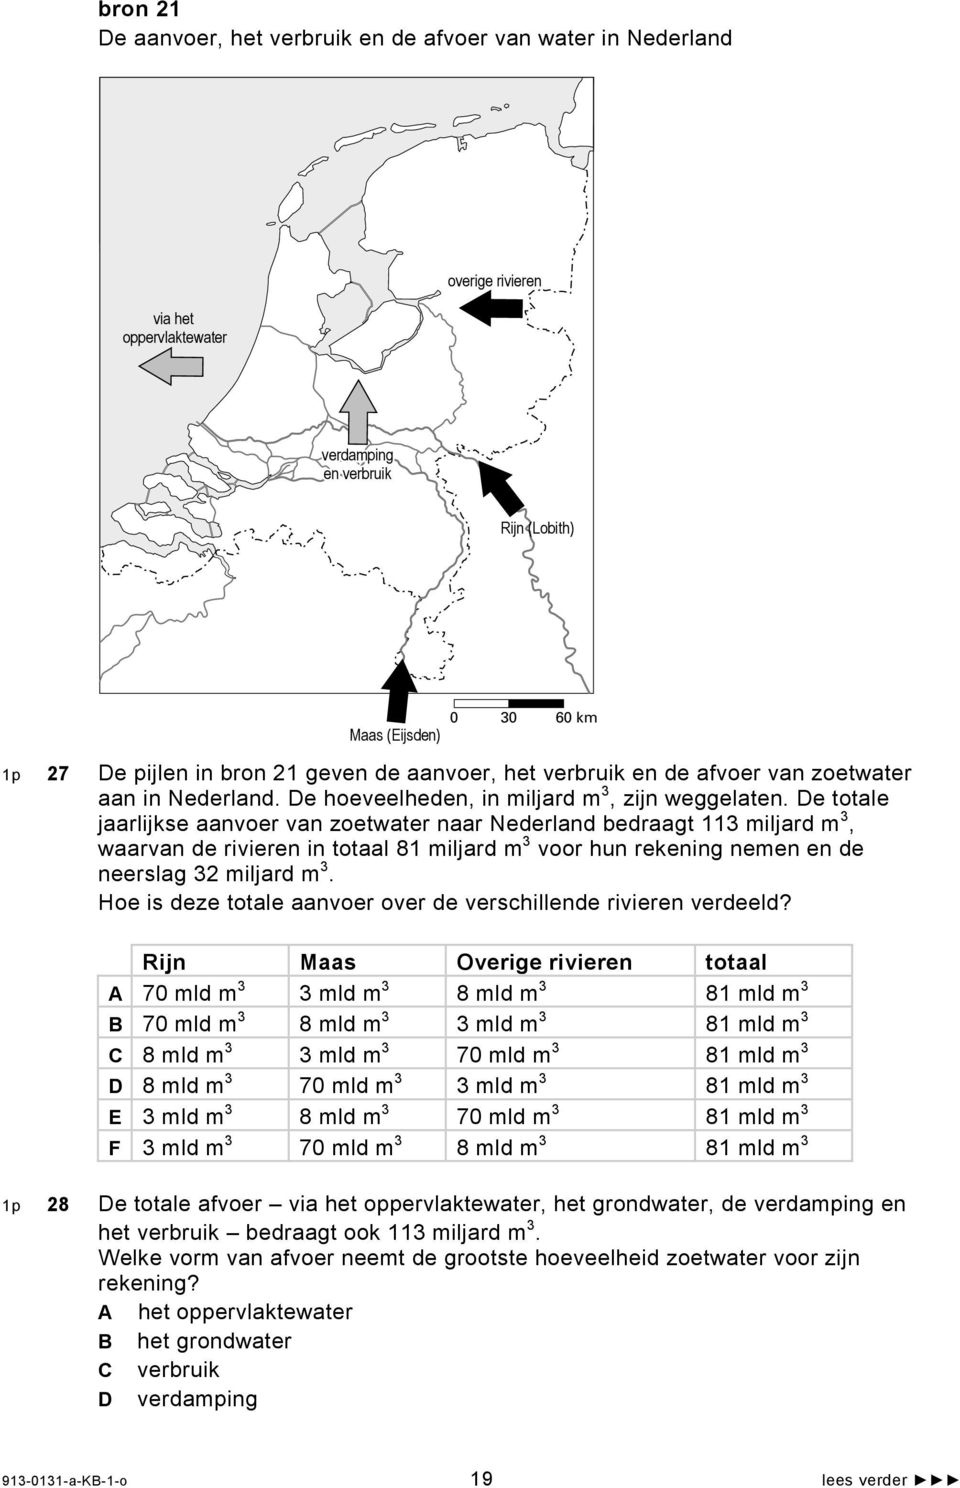 De totale jaarlijkse aanvoer van zoetwater naar Nederland bedraagt 113 miljard m 3, waarvan de rivieren in totaal 81 miljard m 3 voor hun rekening nemen en de neerslag 32 miljard m 3.